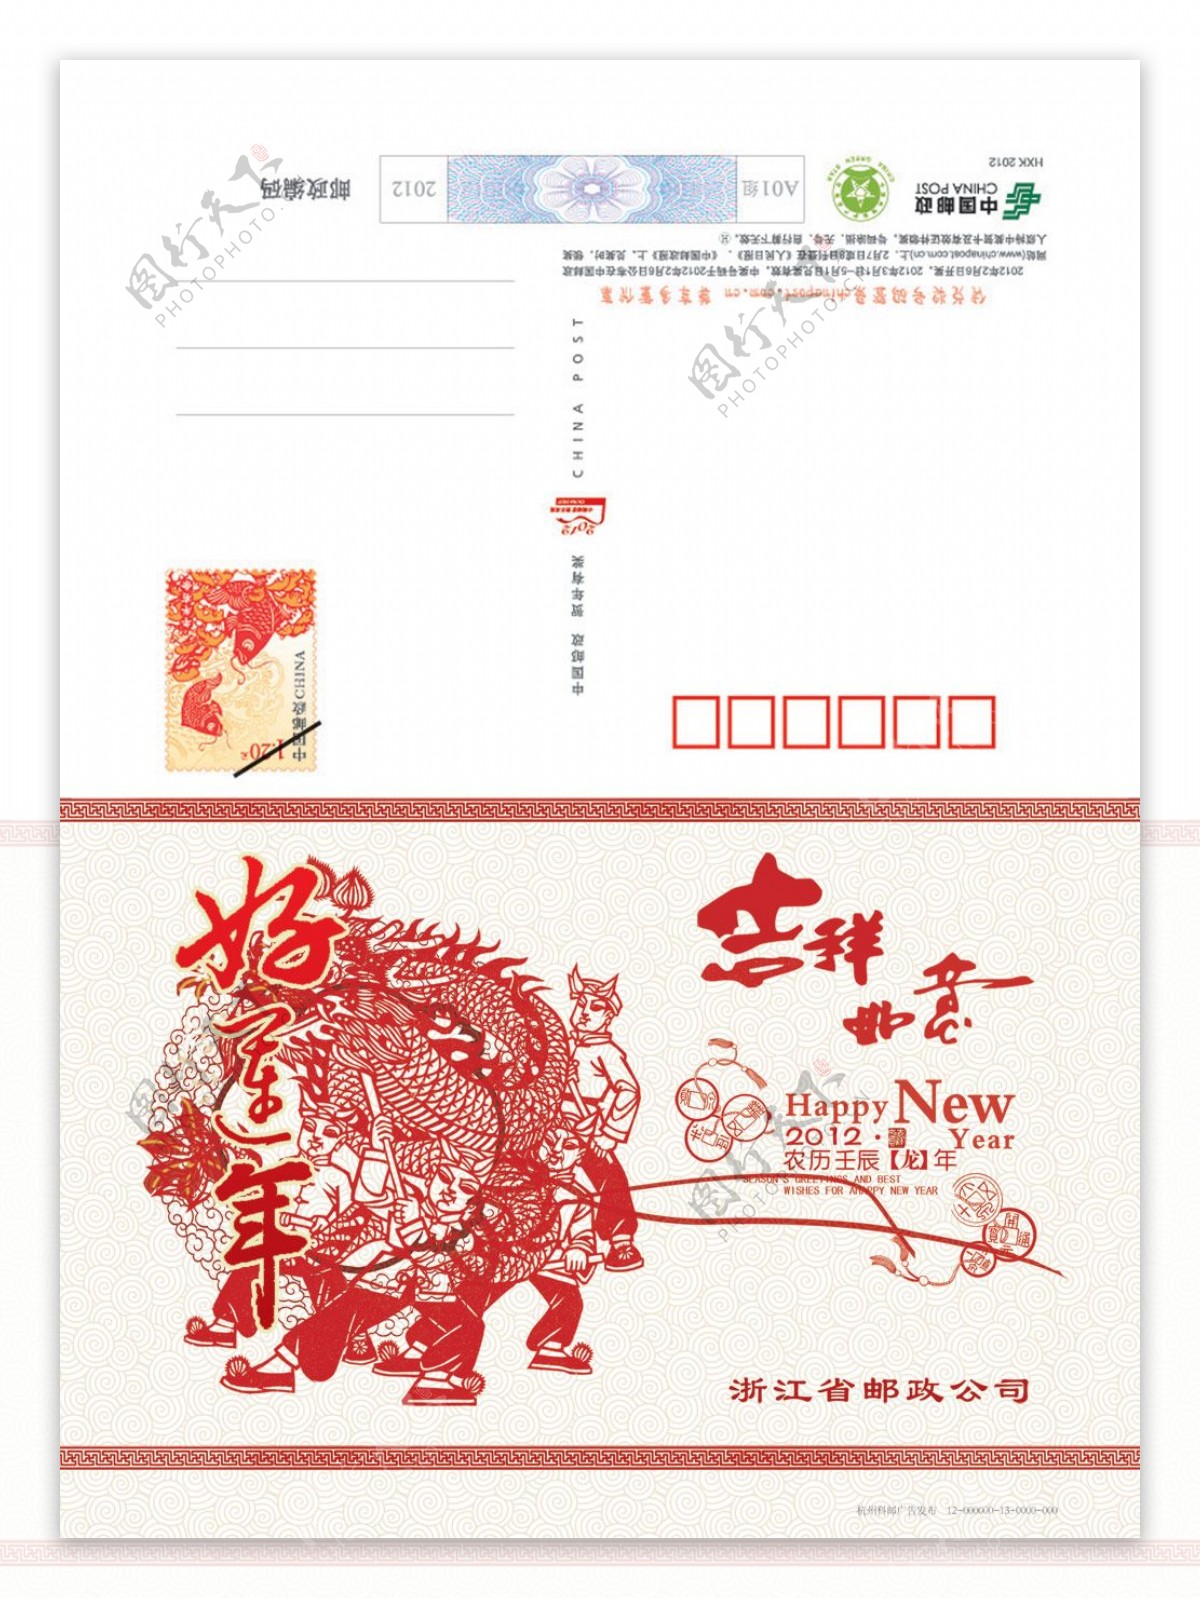 中国邮政龙年明信片贺卡PSD